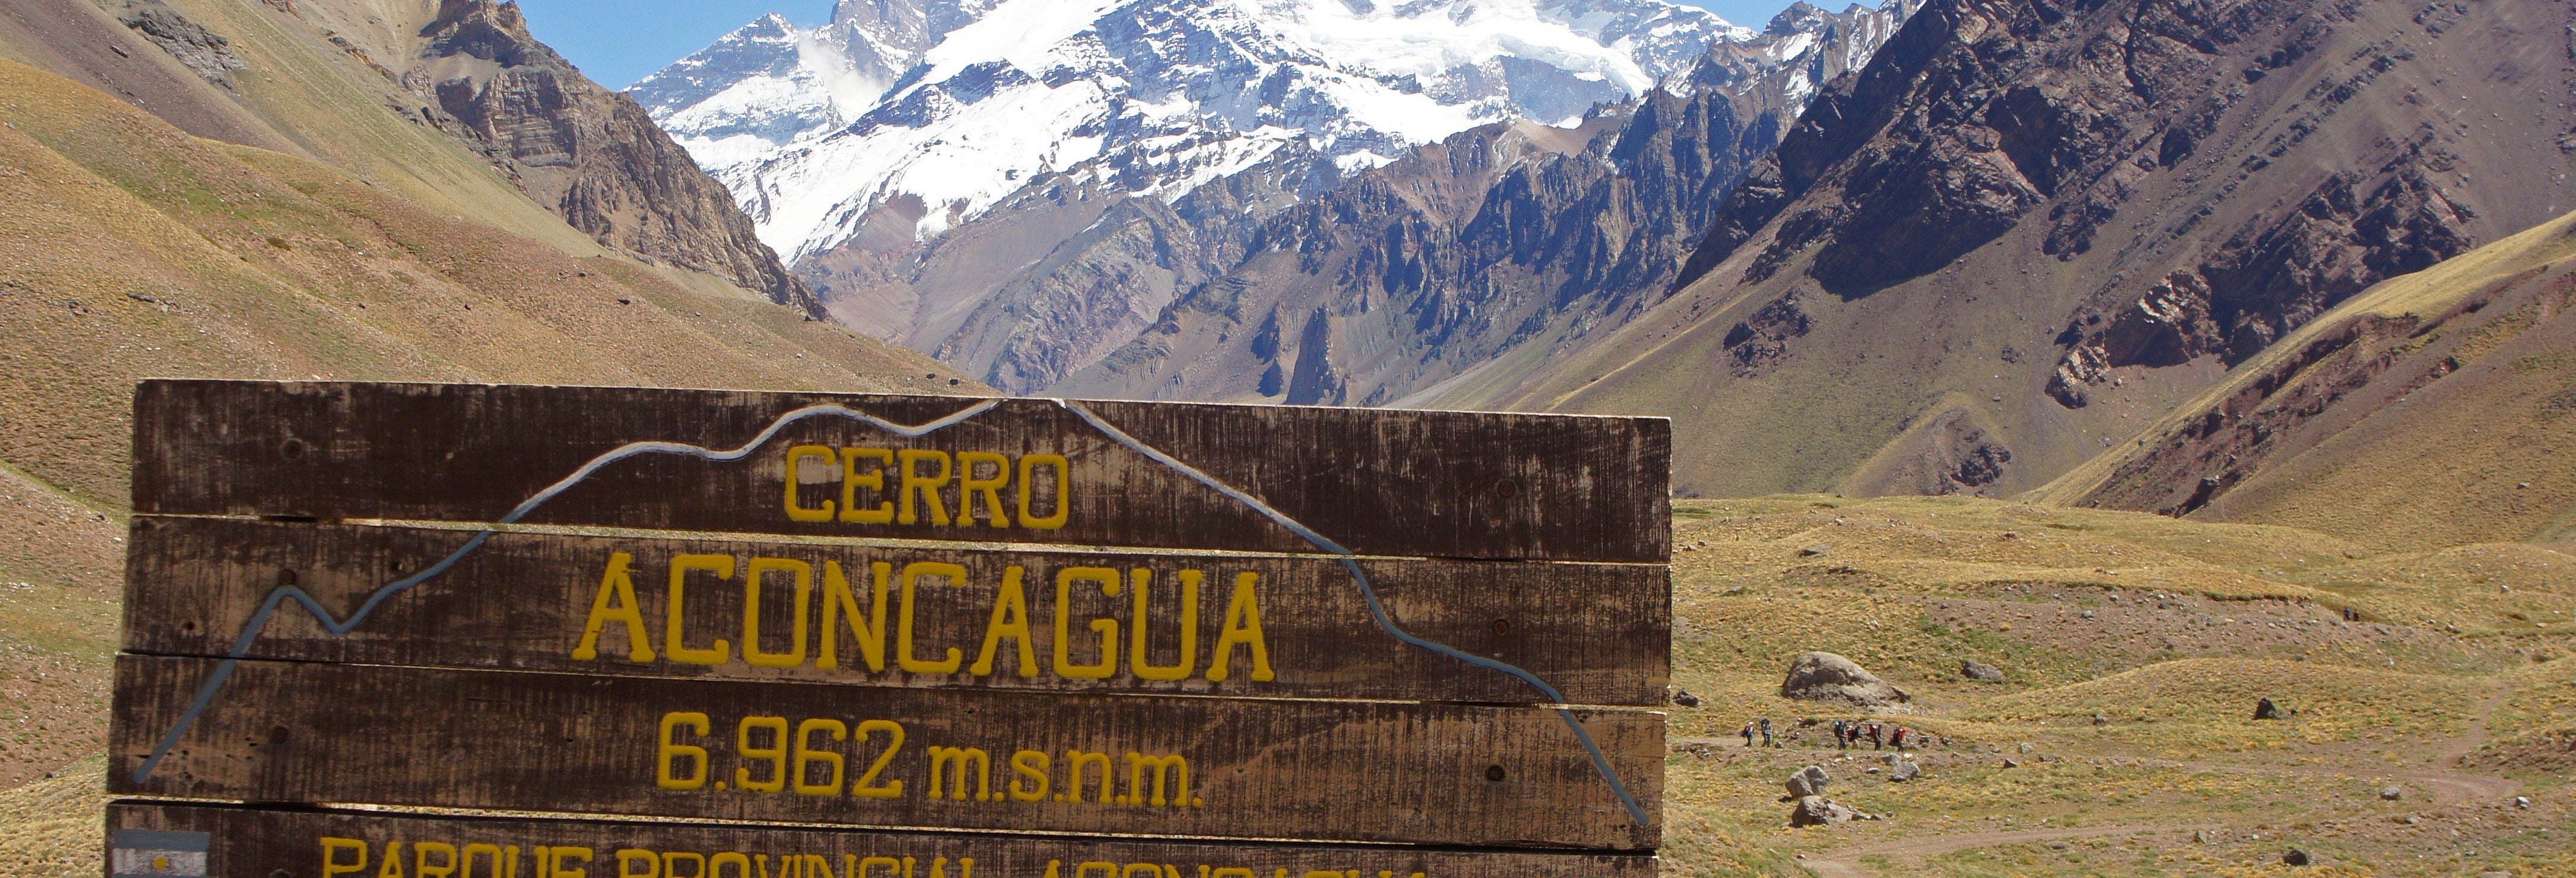 Excursão ao Parque Aconcagua